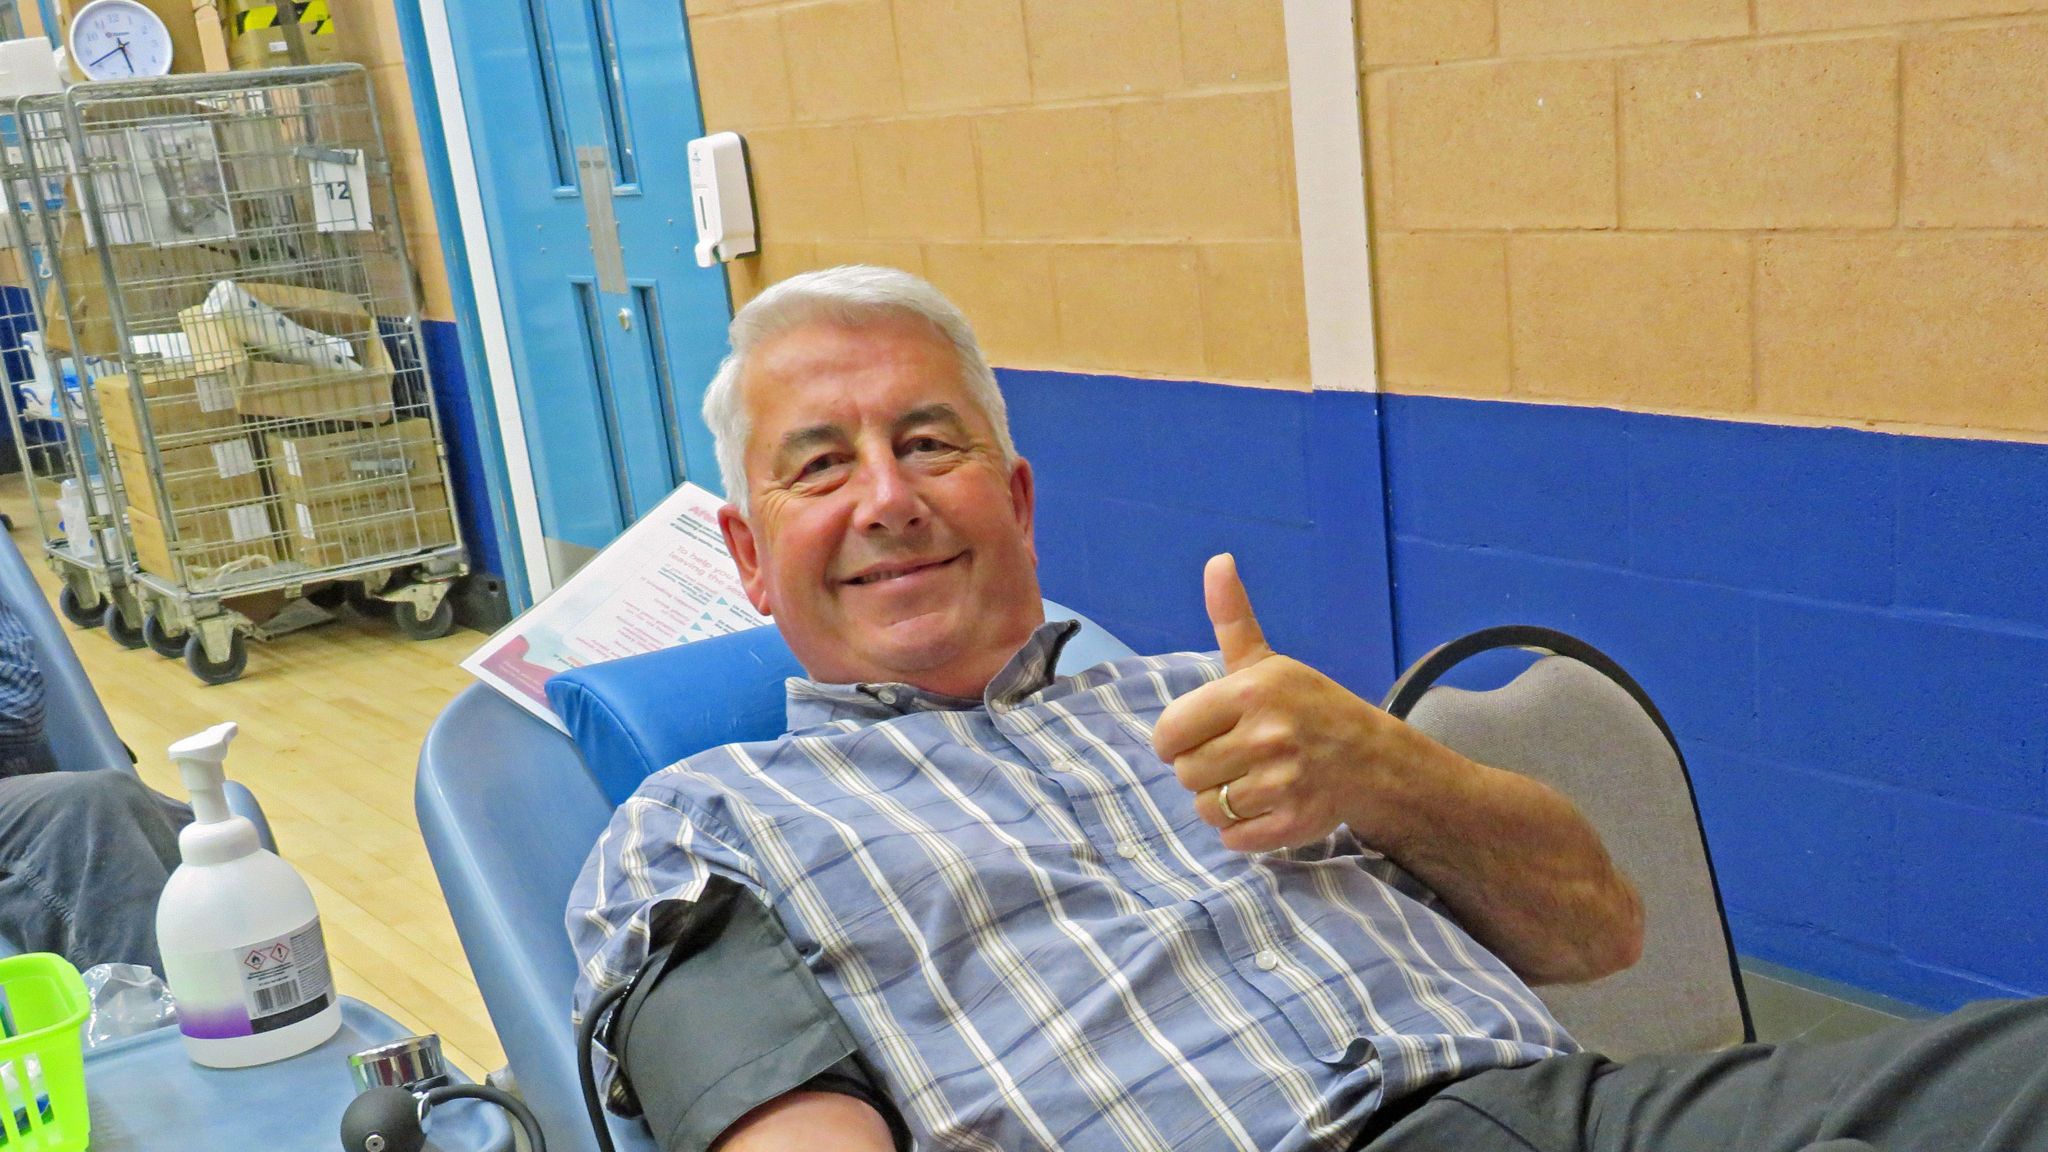 David Rose giving blood